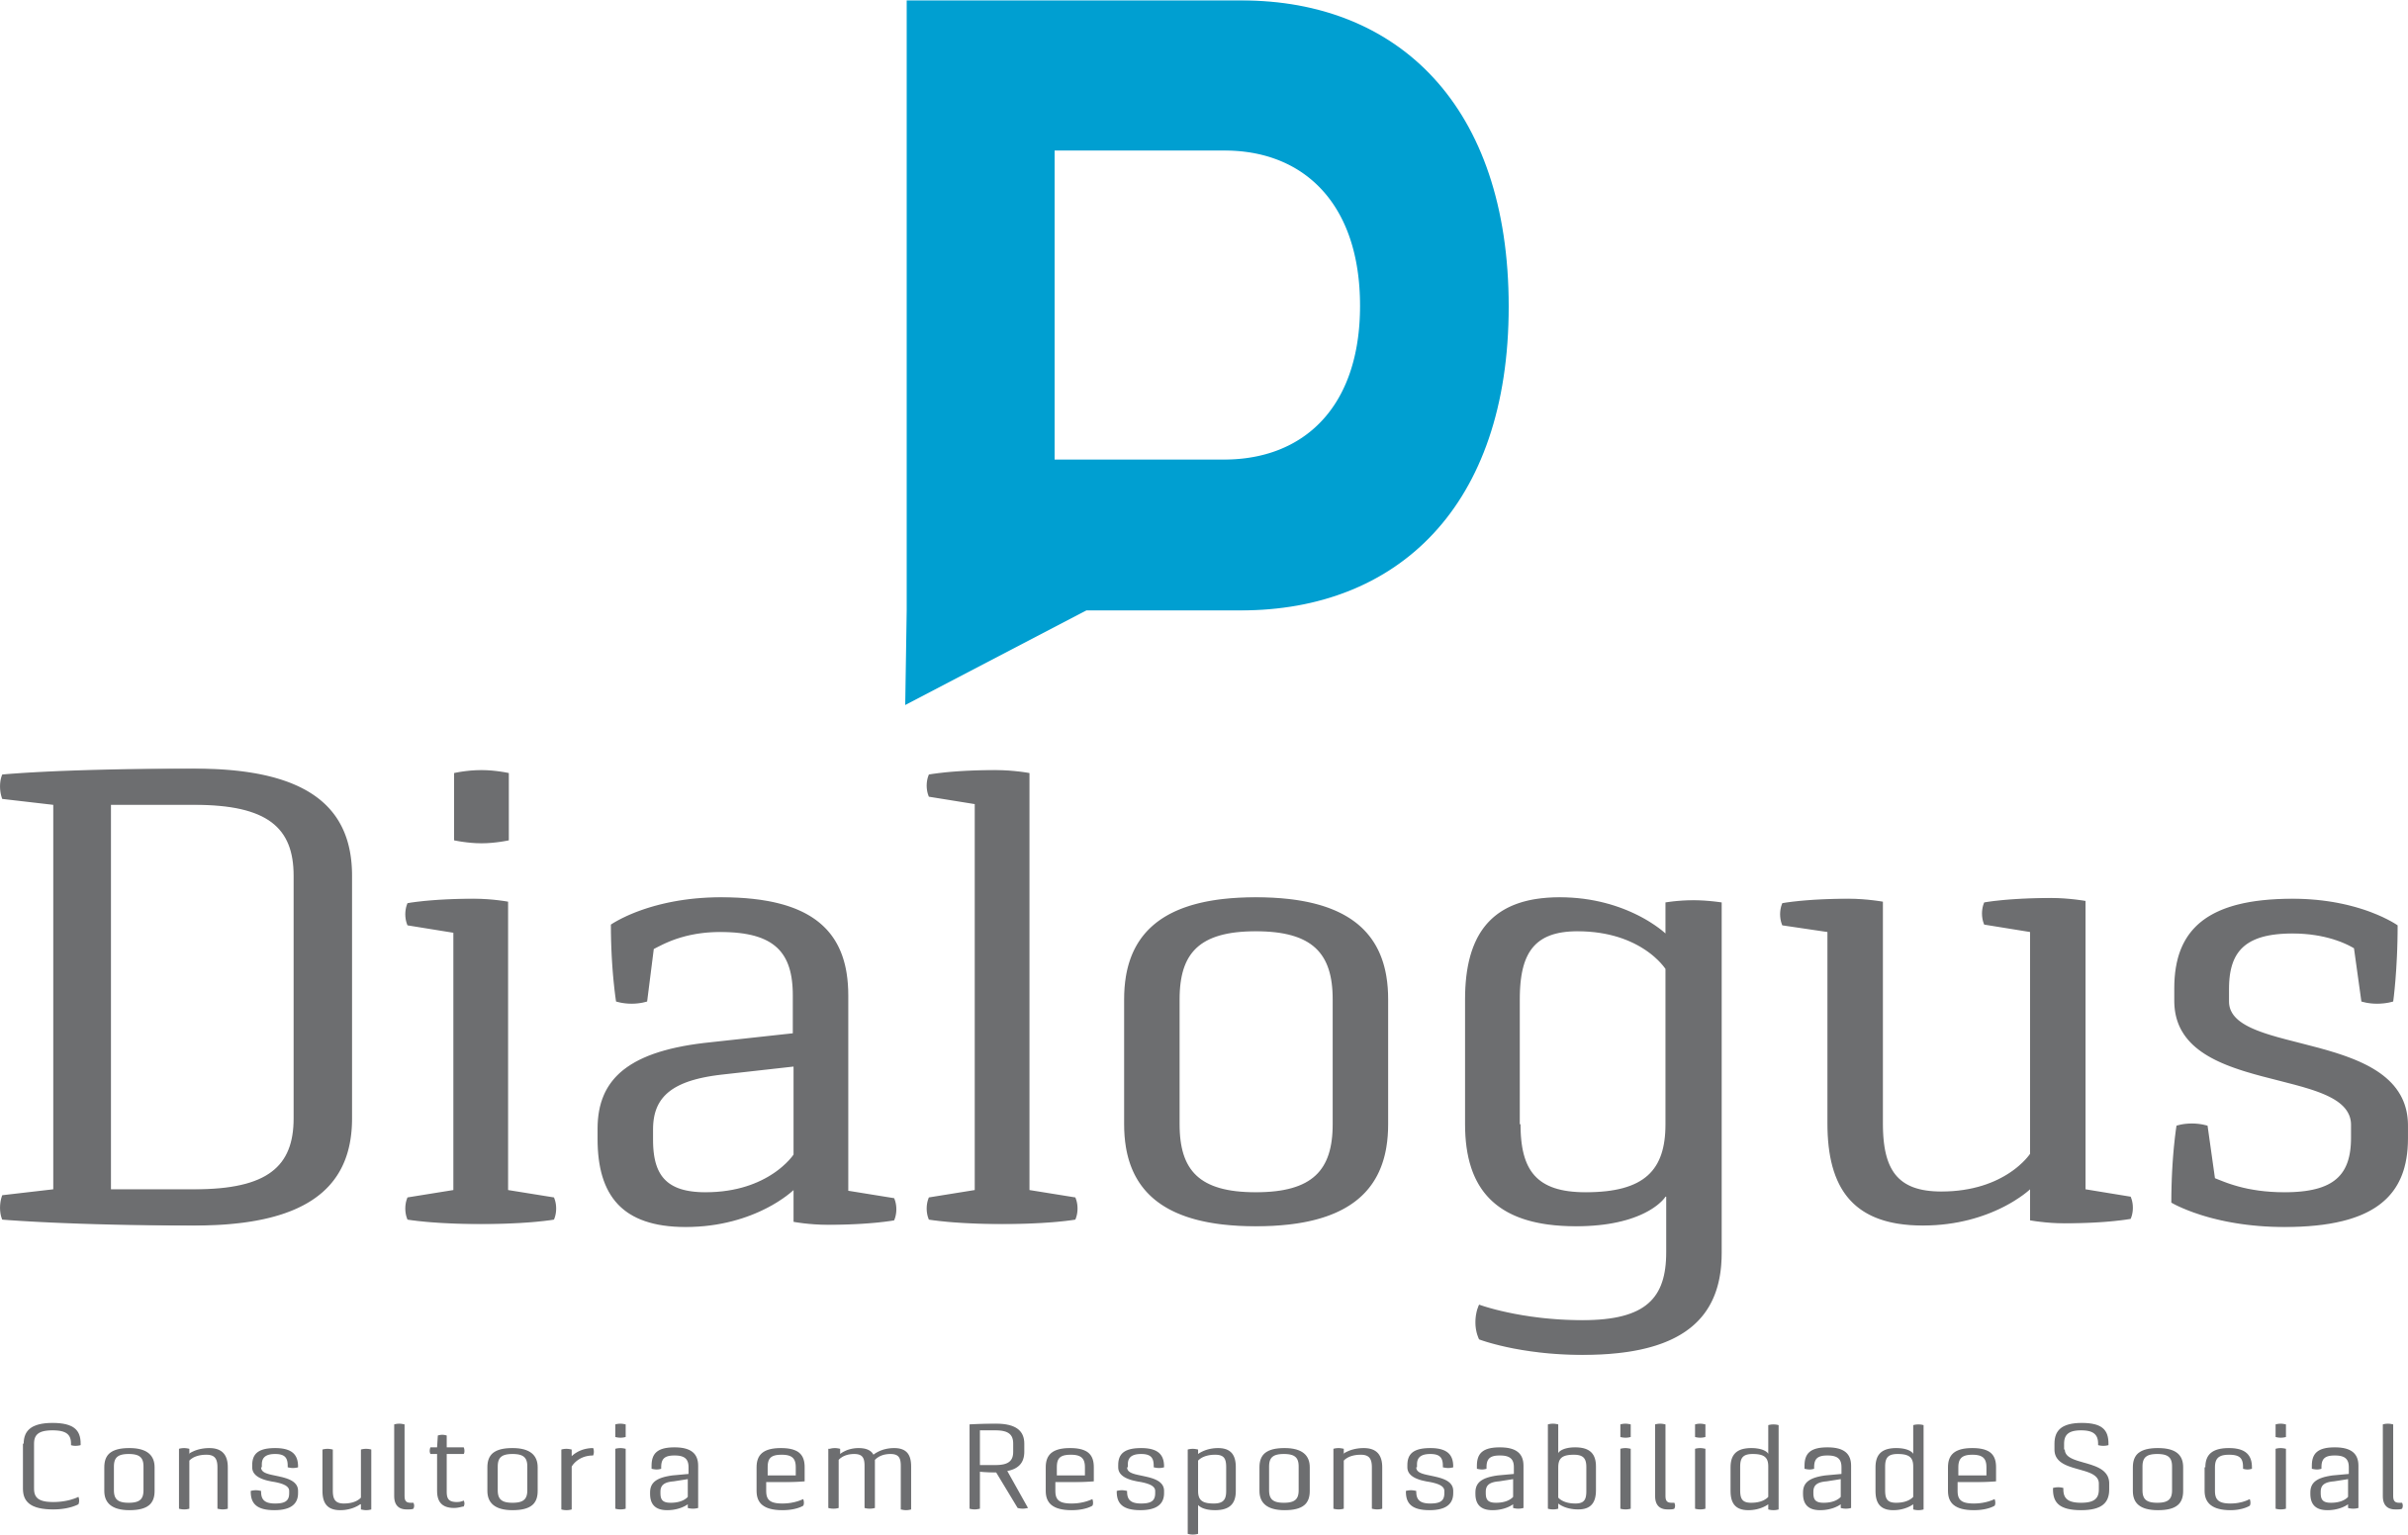 Dialogus Responsabilidade Social - Consultoria - Plano de Carreira - Fortaleza/CE